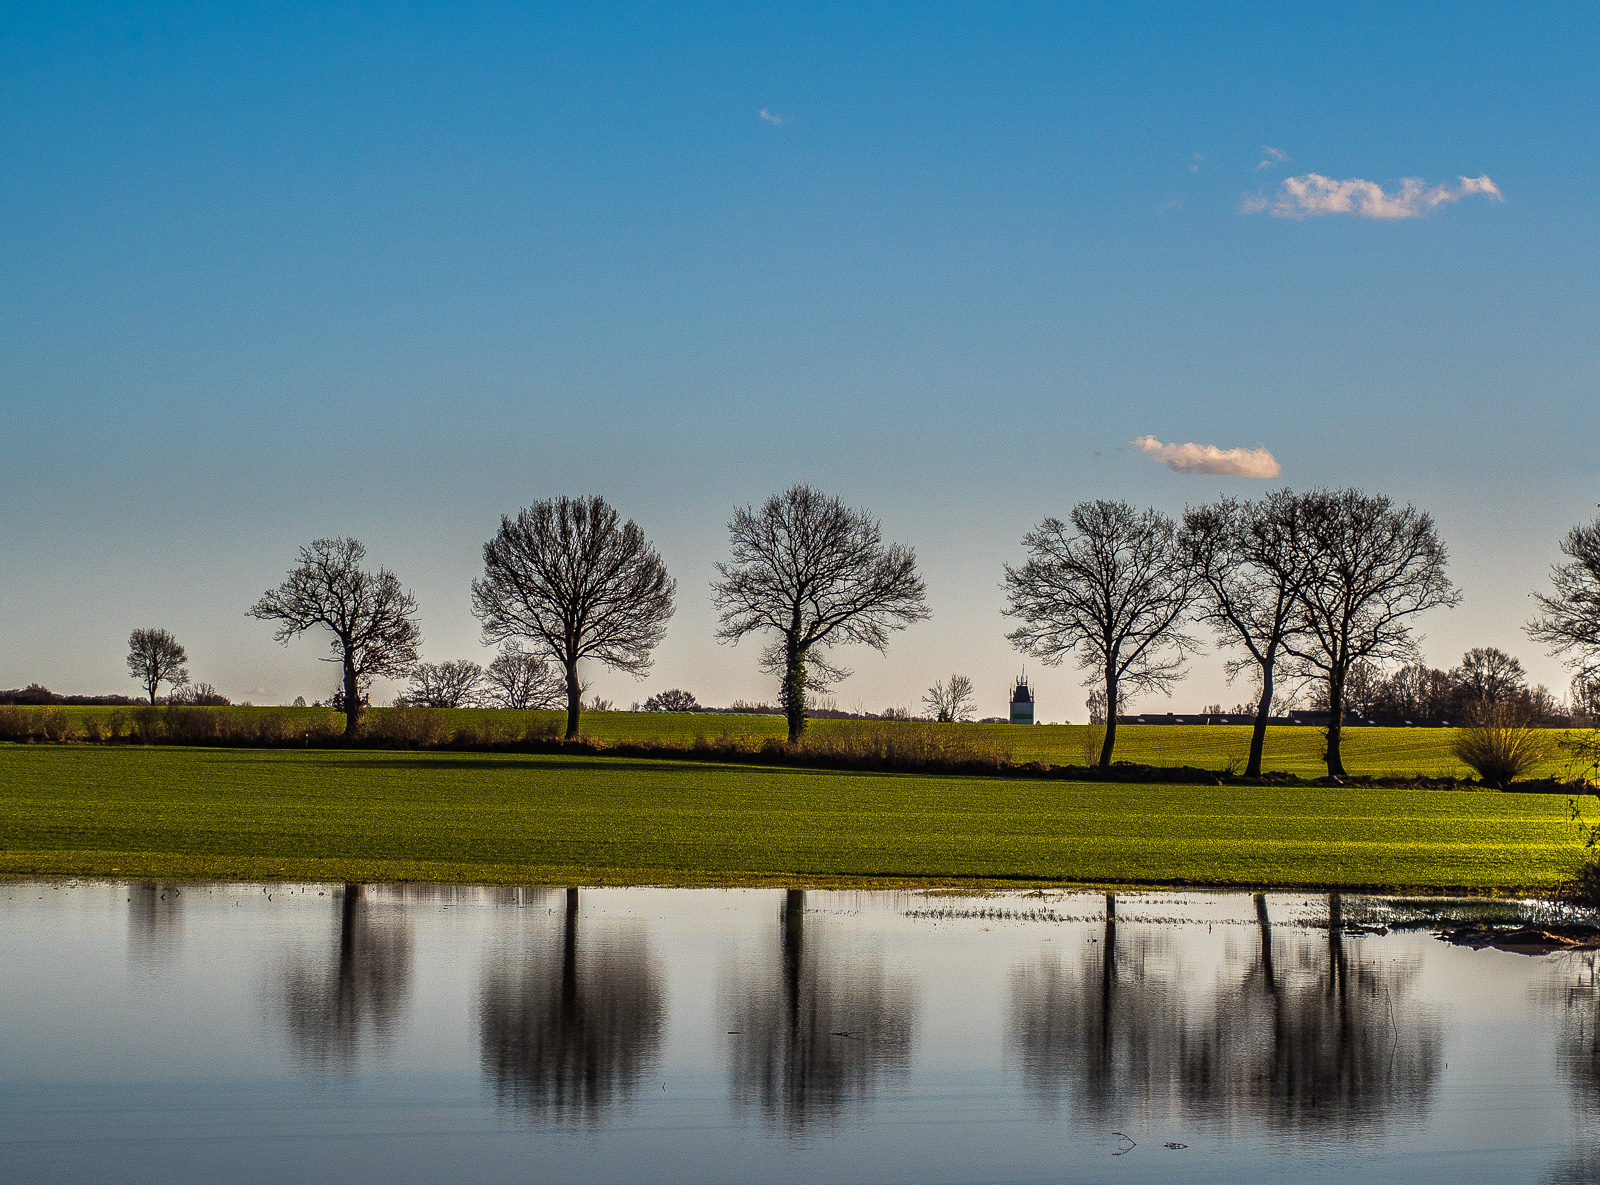 eine Reihe von sechs Bäumen längs einer Hecke und ihre Spiegelung in einem Teich im Vordergrund des Bildes